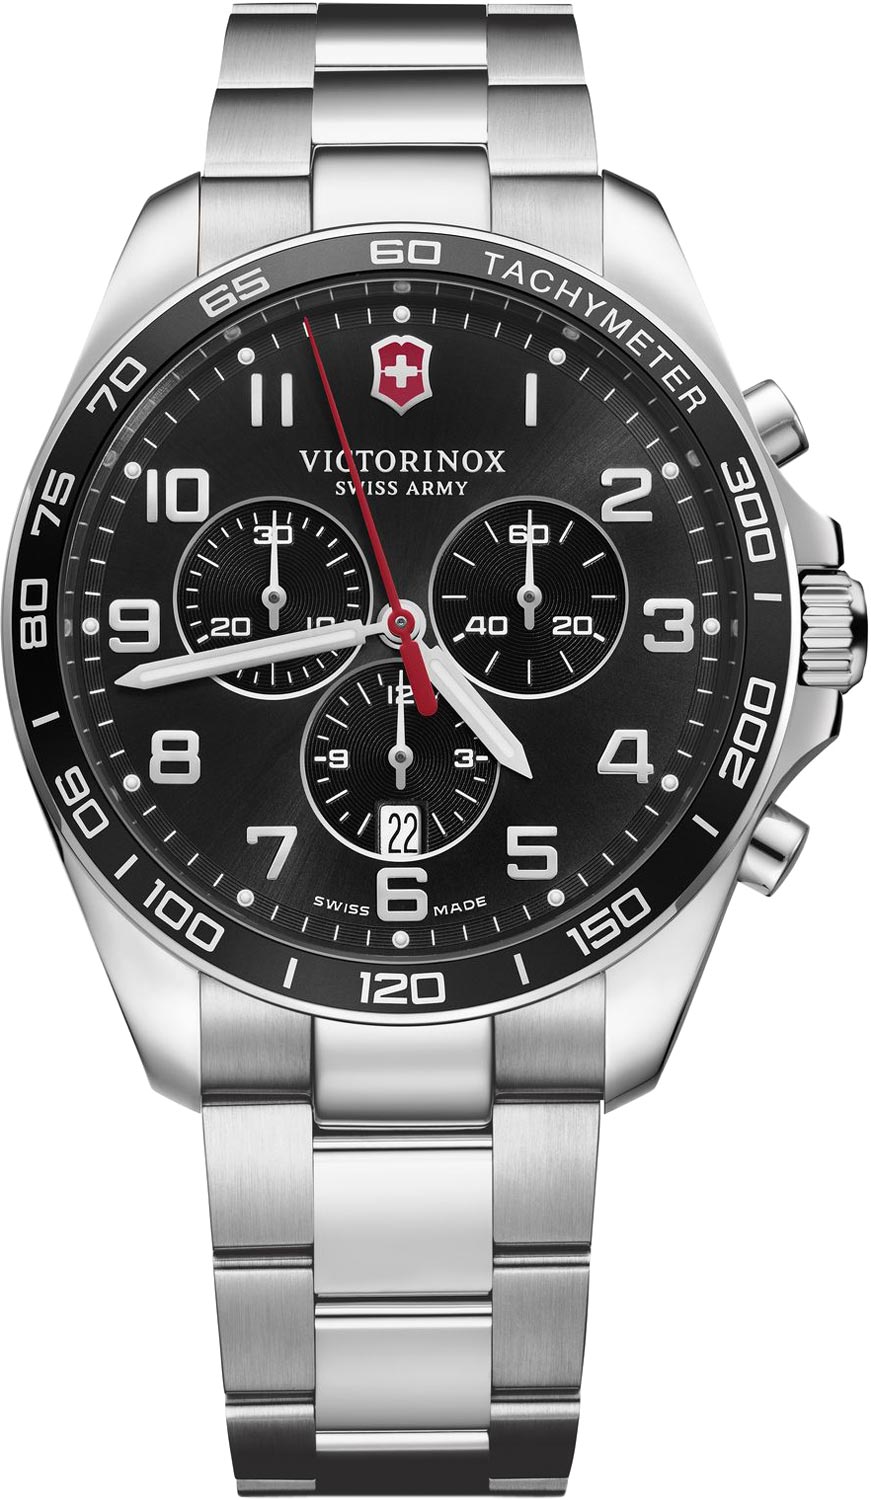 Швейцарские наручные часы Victorinox 241899 с хронографом